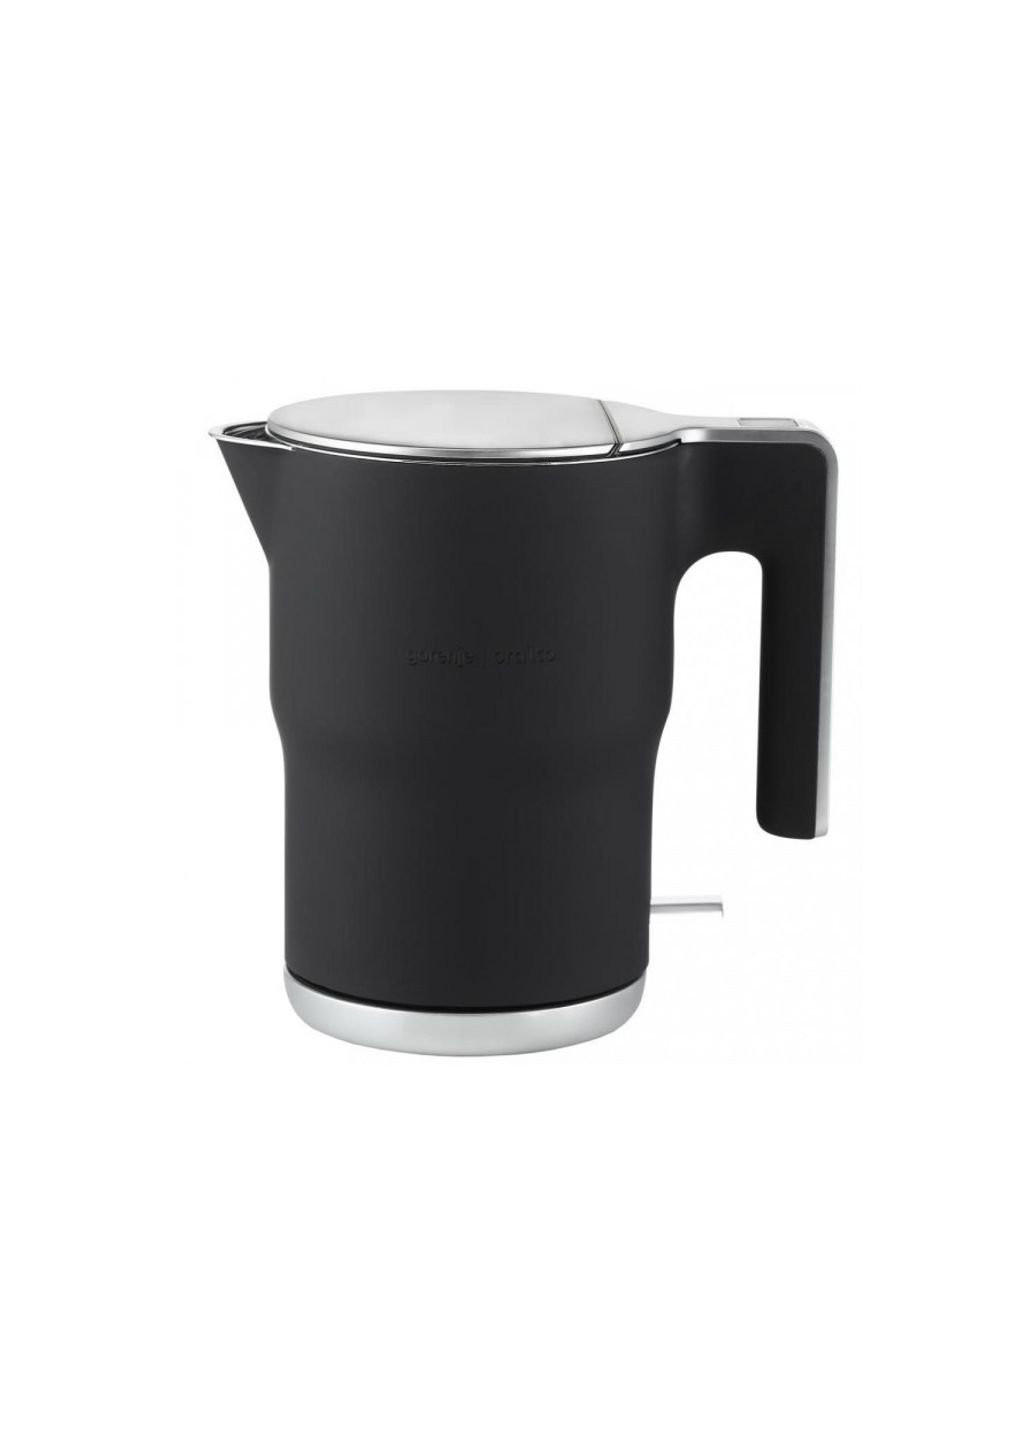 Електричний чайник K-15-ORAB 1.5 л чорний Gorenje (253628600)